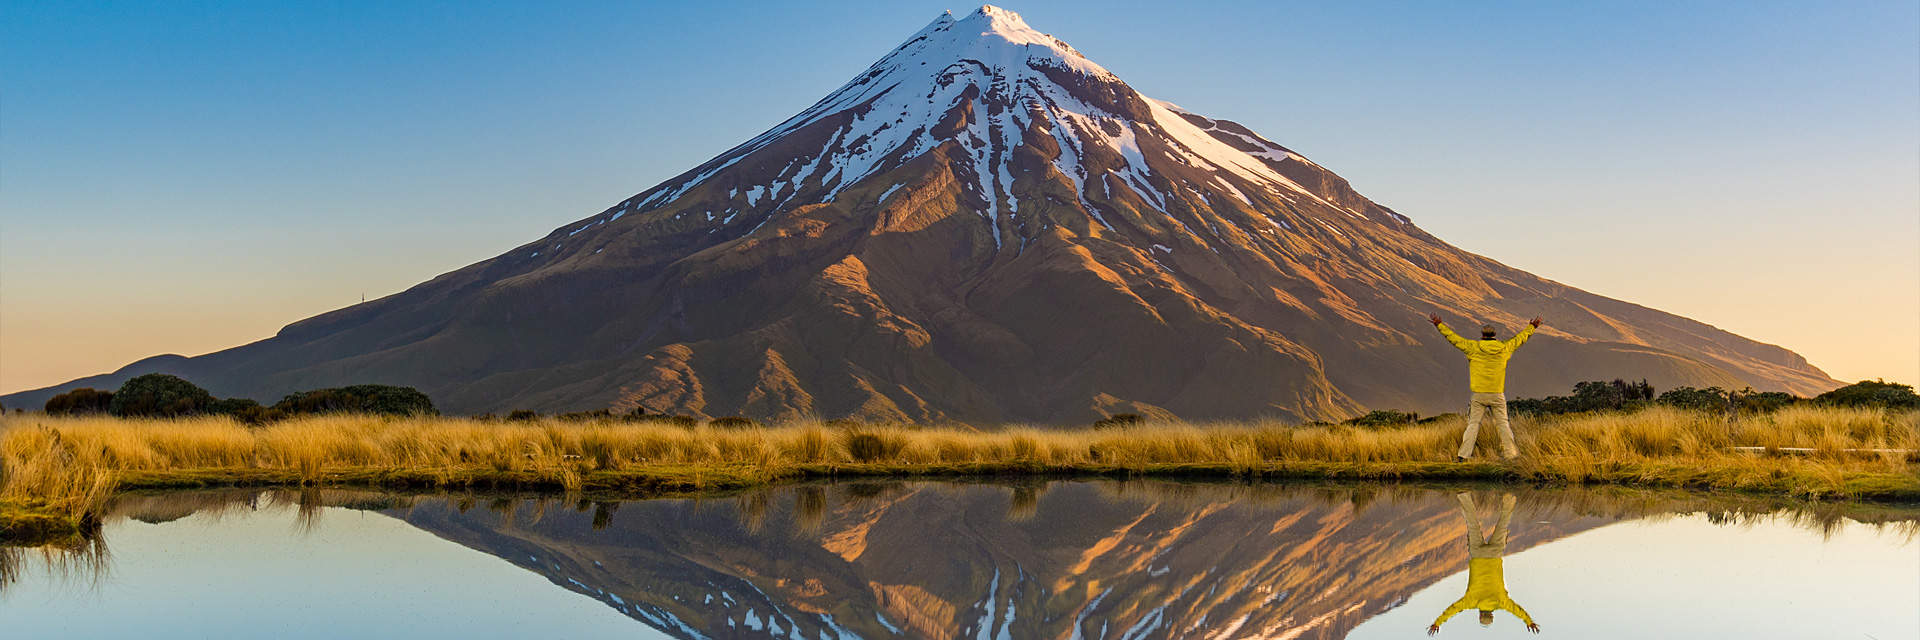 Neuseeland – Ein halbes Jahr durchs Land der Kiwis